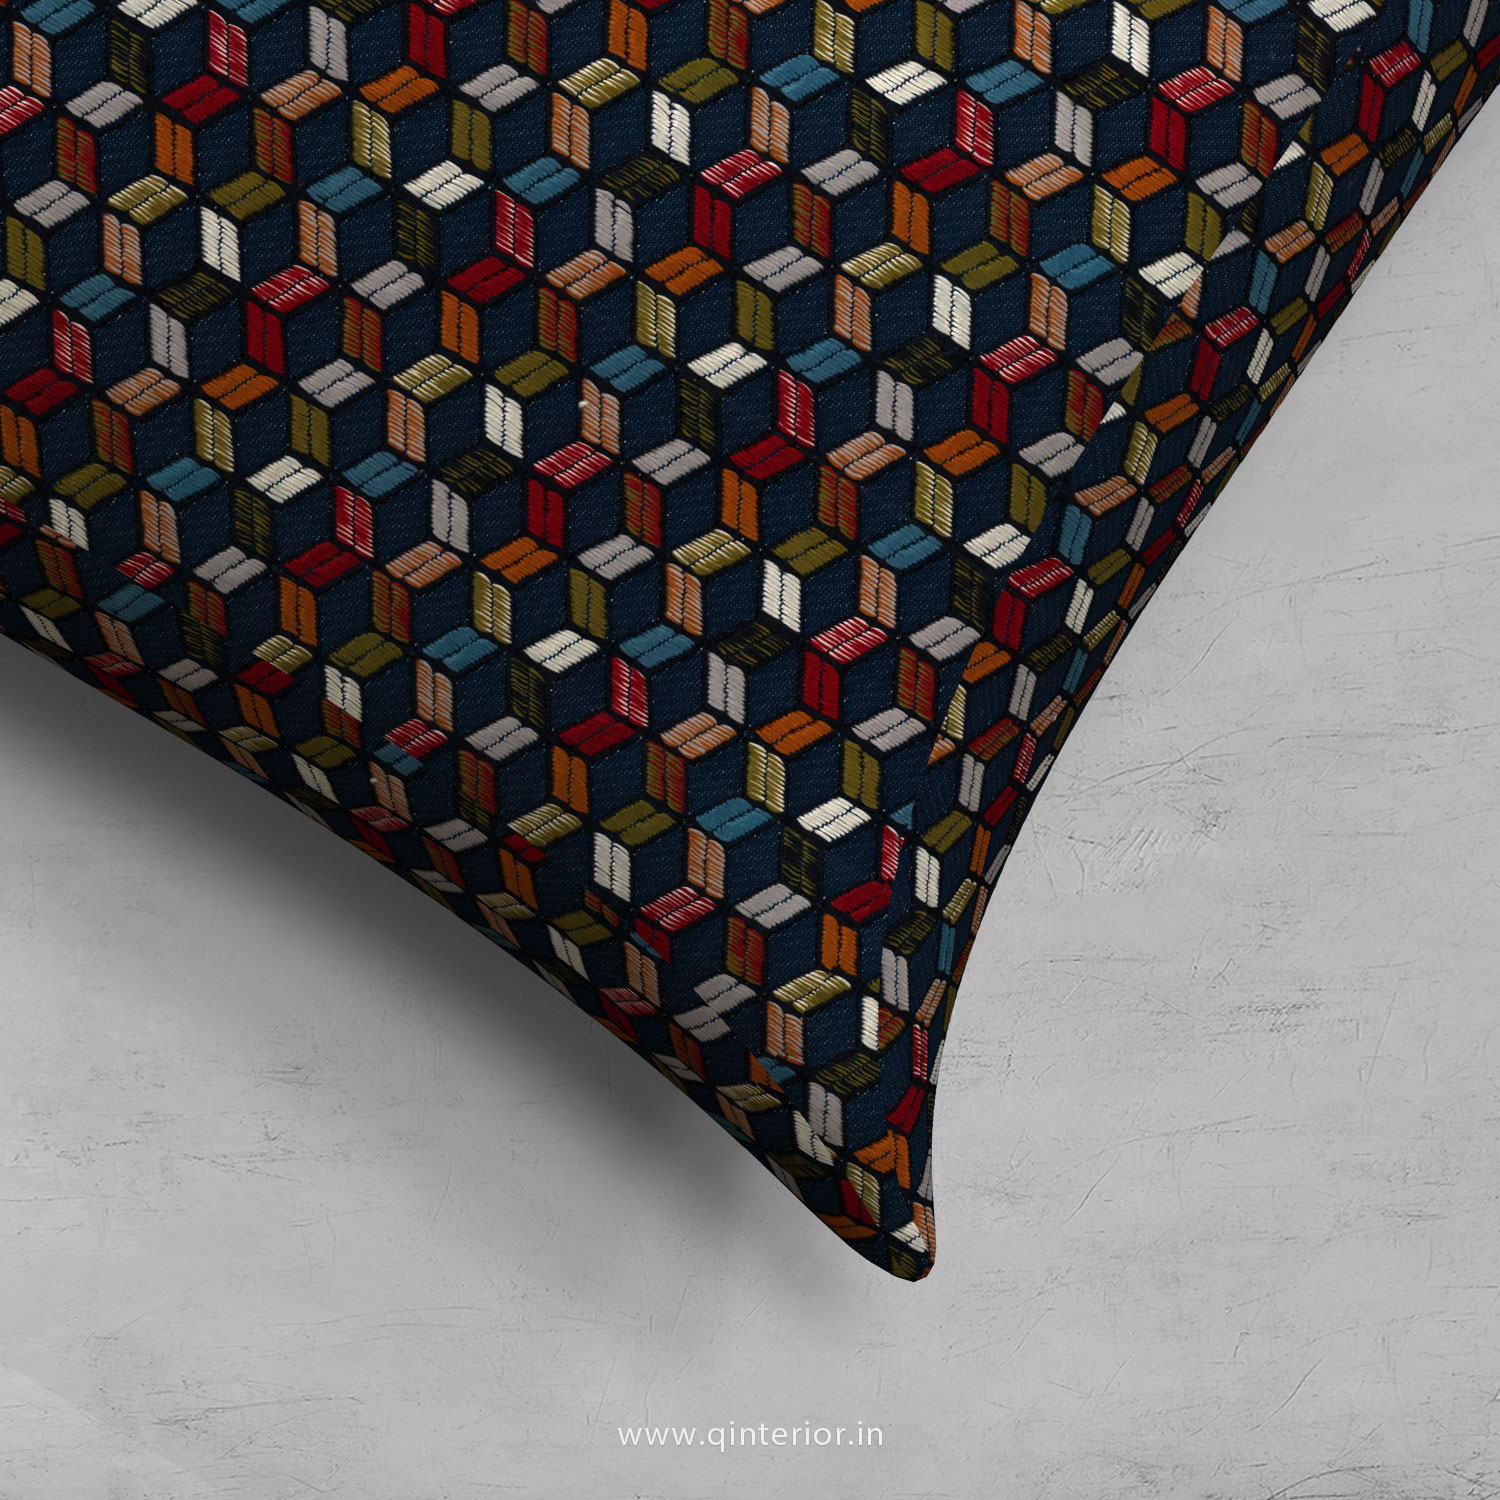 Cushion With Cushion Cover in Bargello- CUS001 BG04